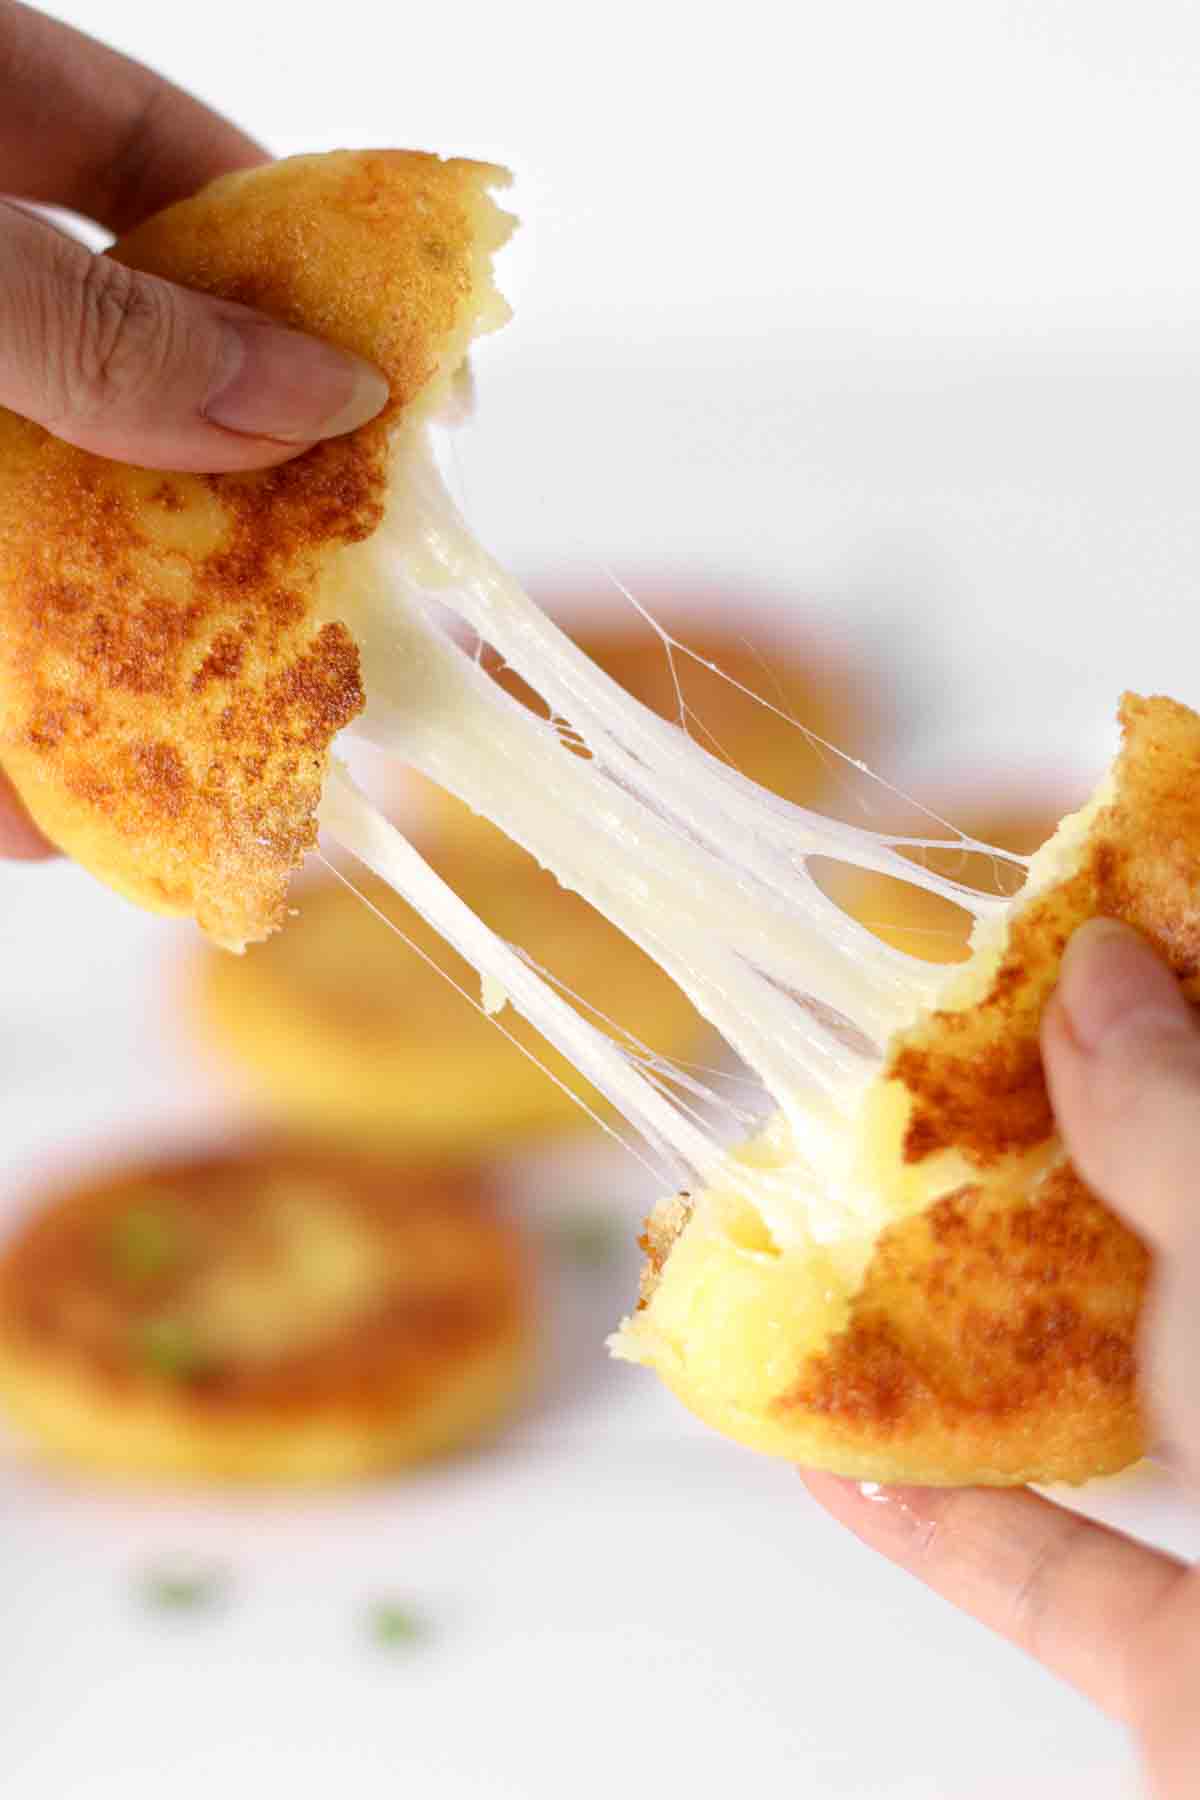 korean cheese potato pancakes, korean cheesy potato pancakes filled with cheese